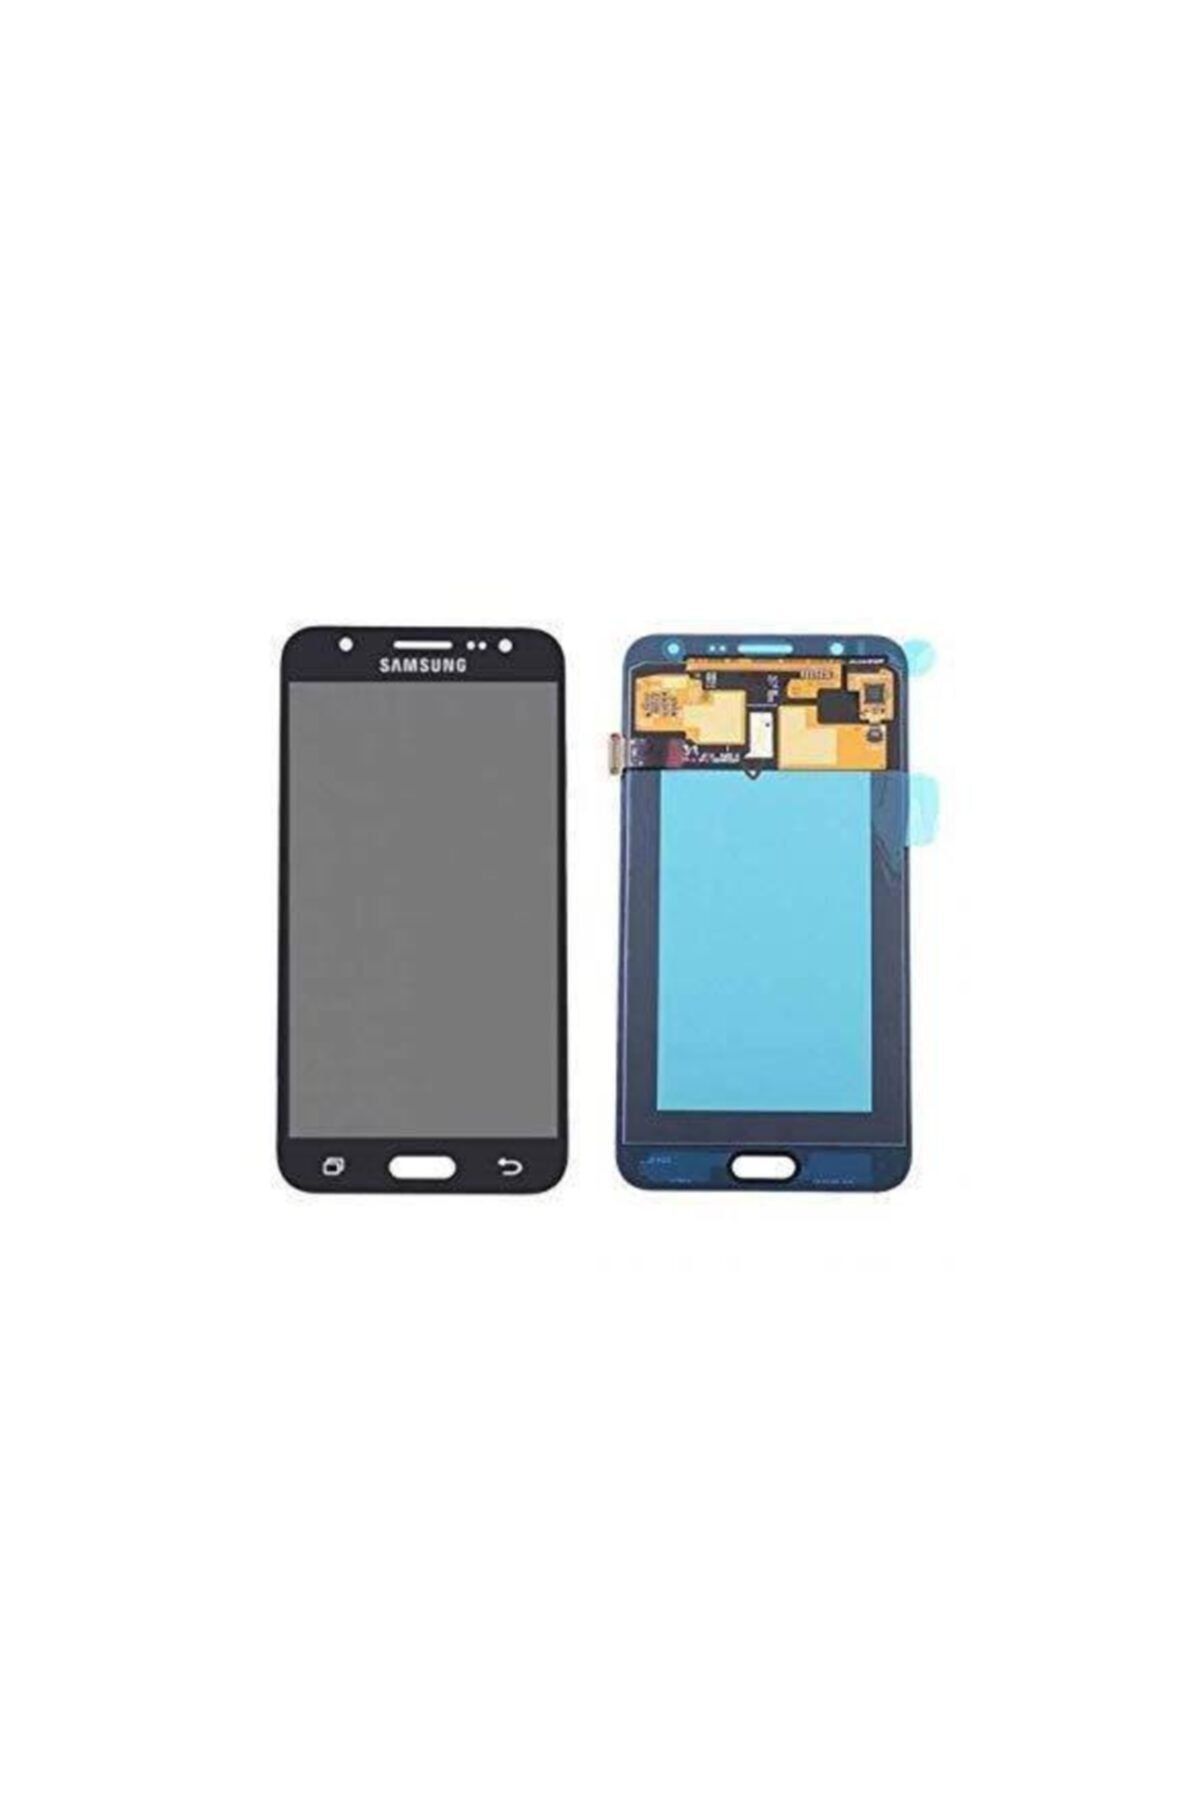 Samsung Kdr Galaxy J7 Prime 2018 Sm-g611 Revize Lcd Dokunmatik Ekran Siyah